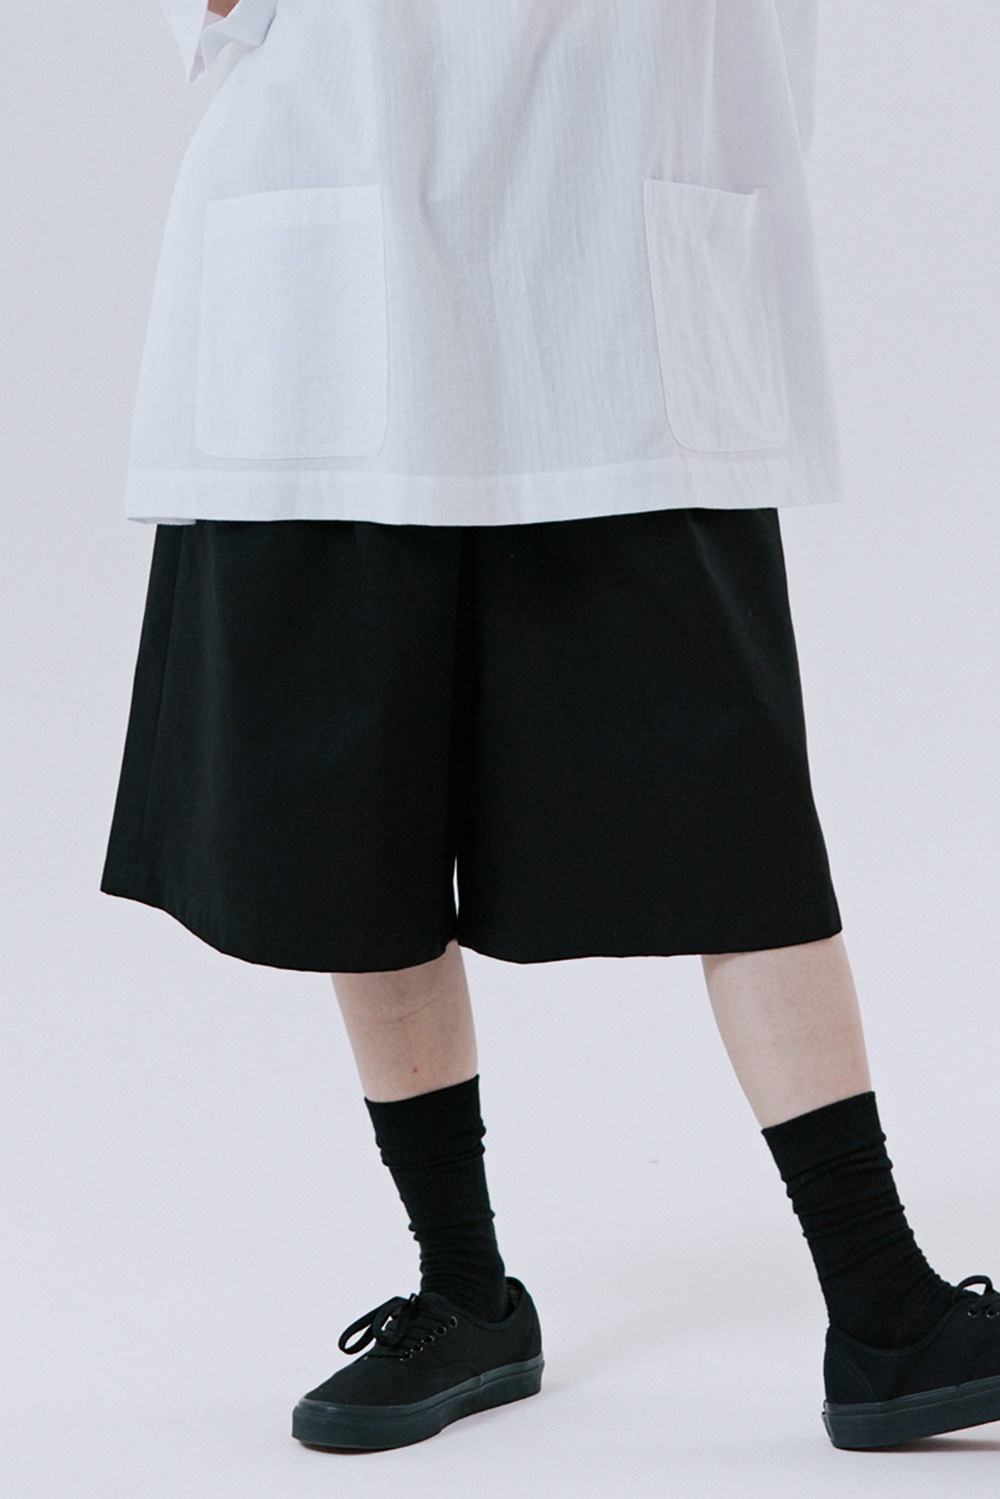 unisex Bermuda pants black [4color] [6월 14일 순차적 배송]